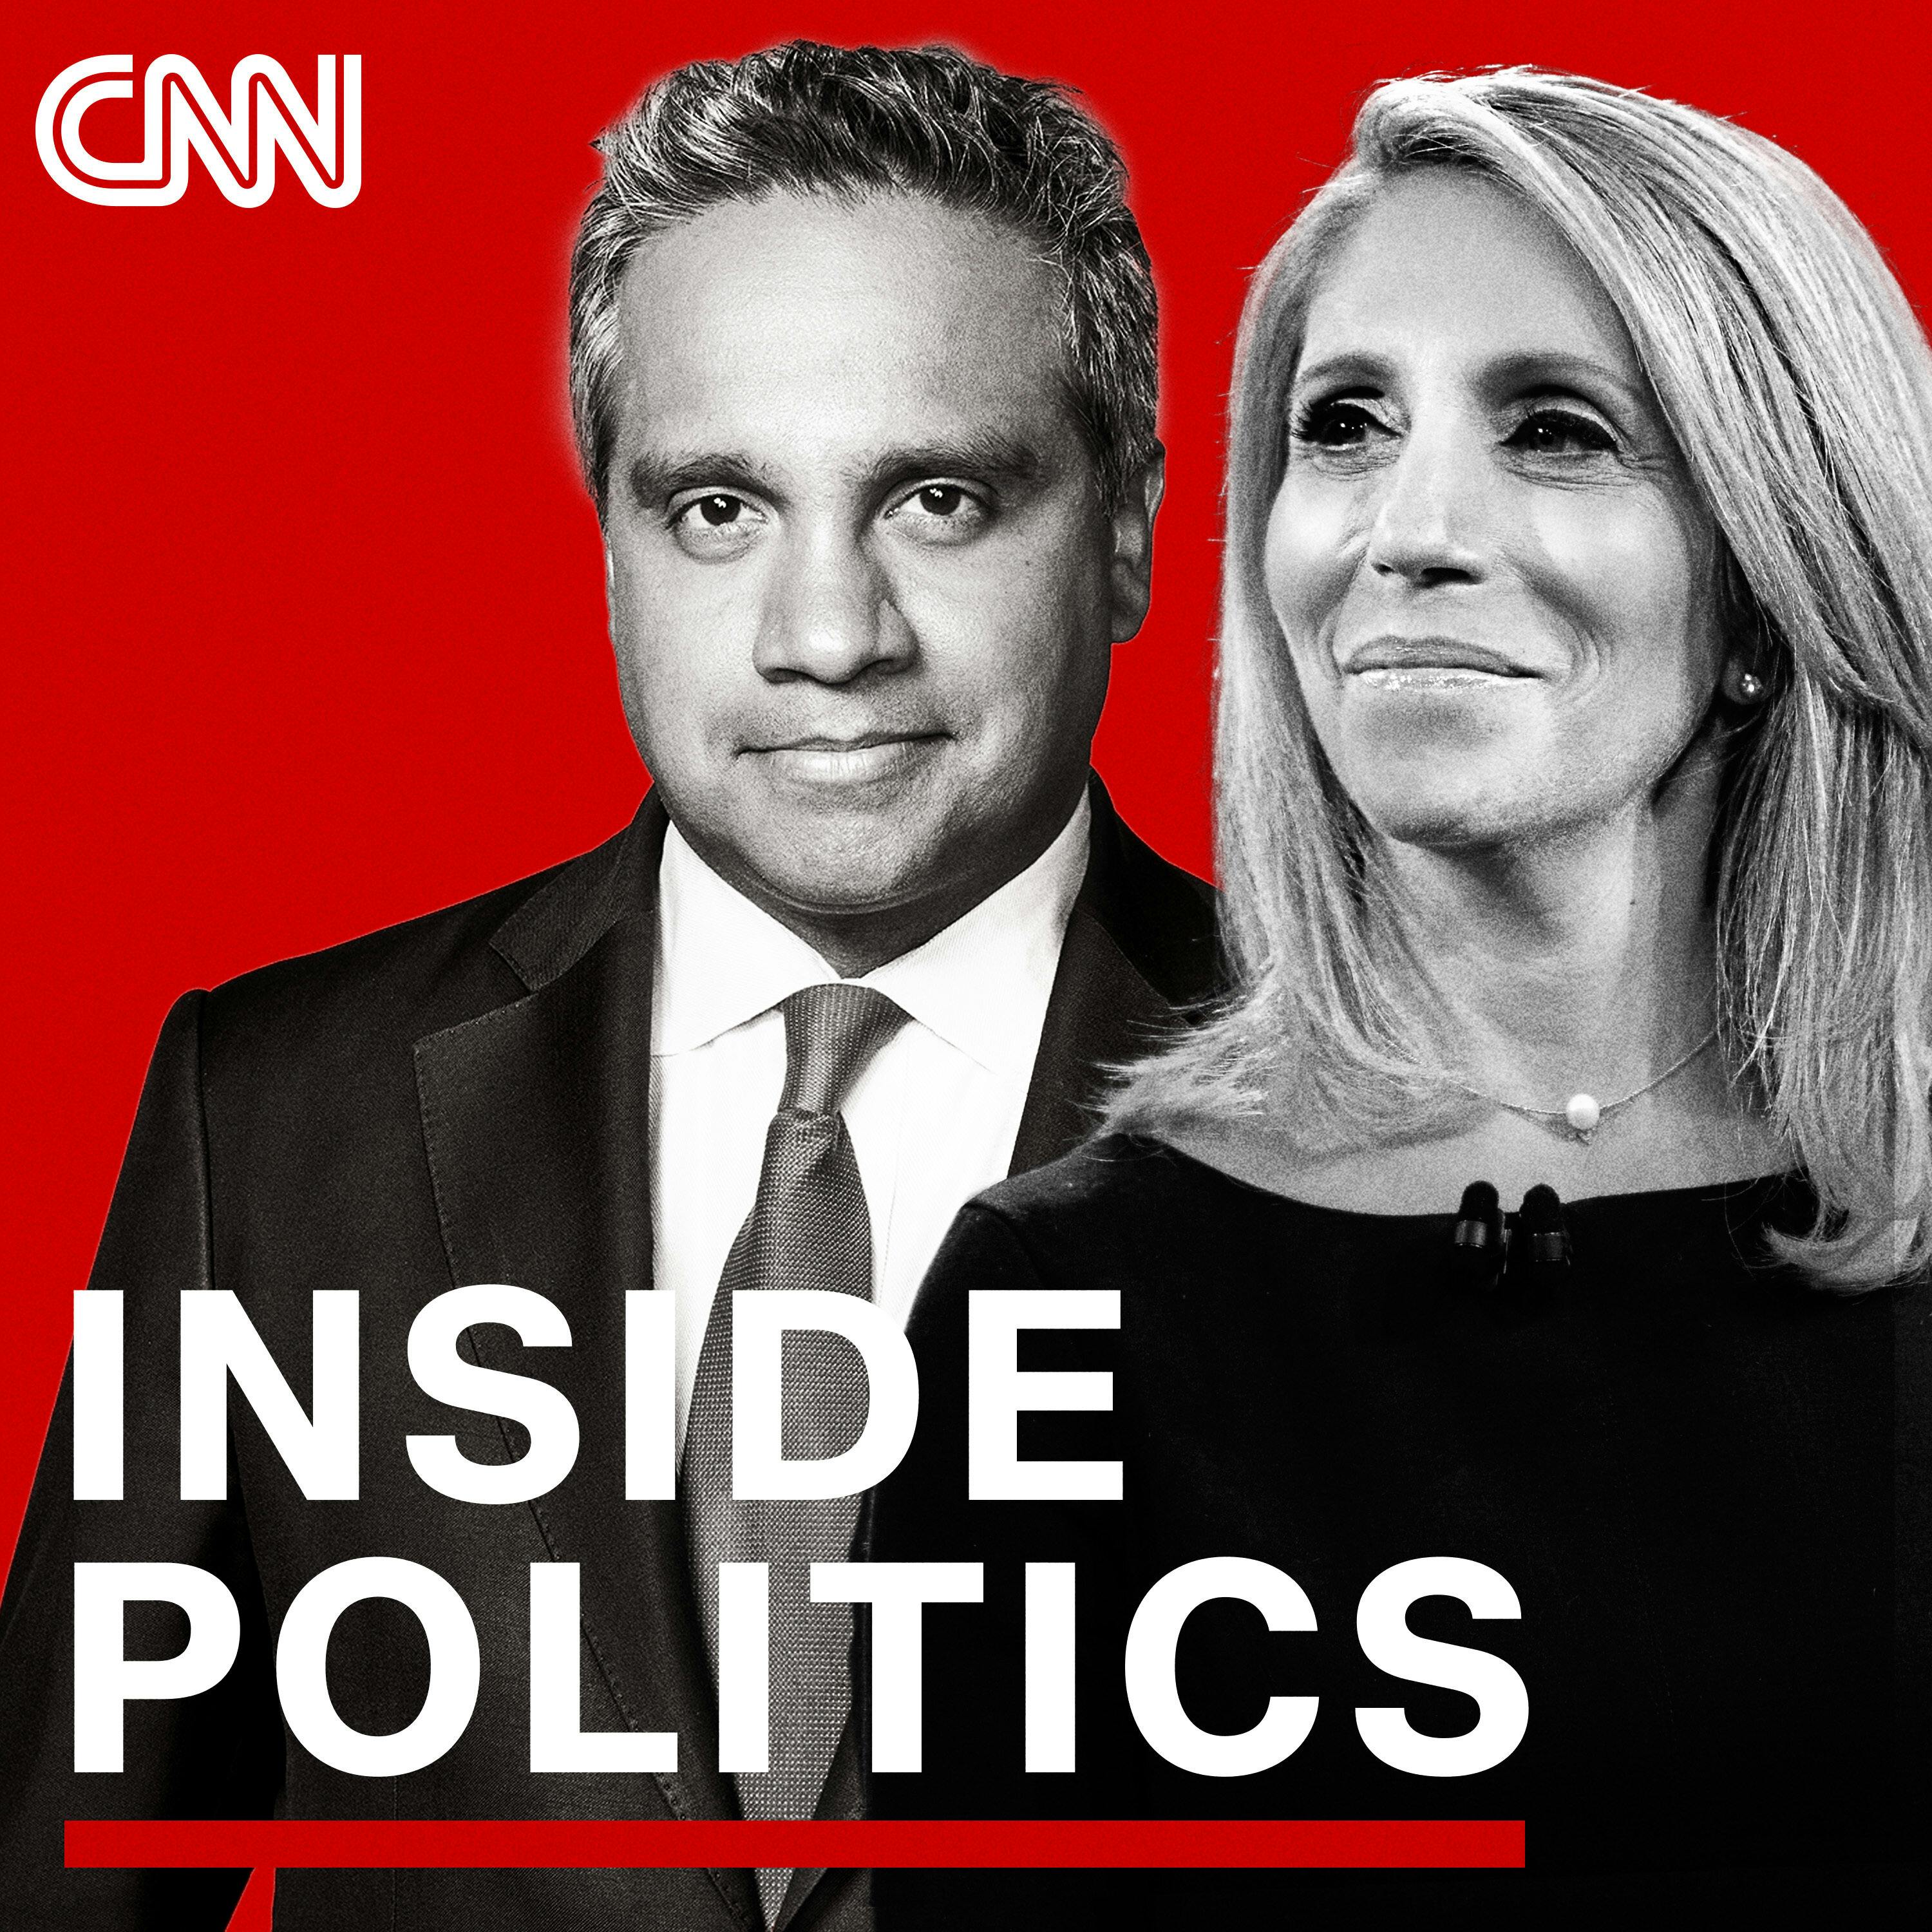 Inside Politics Podcast Update For Thursday, September 2, 2021